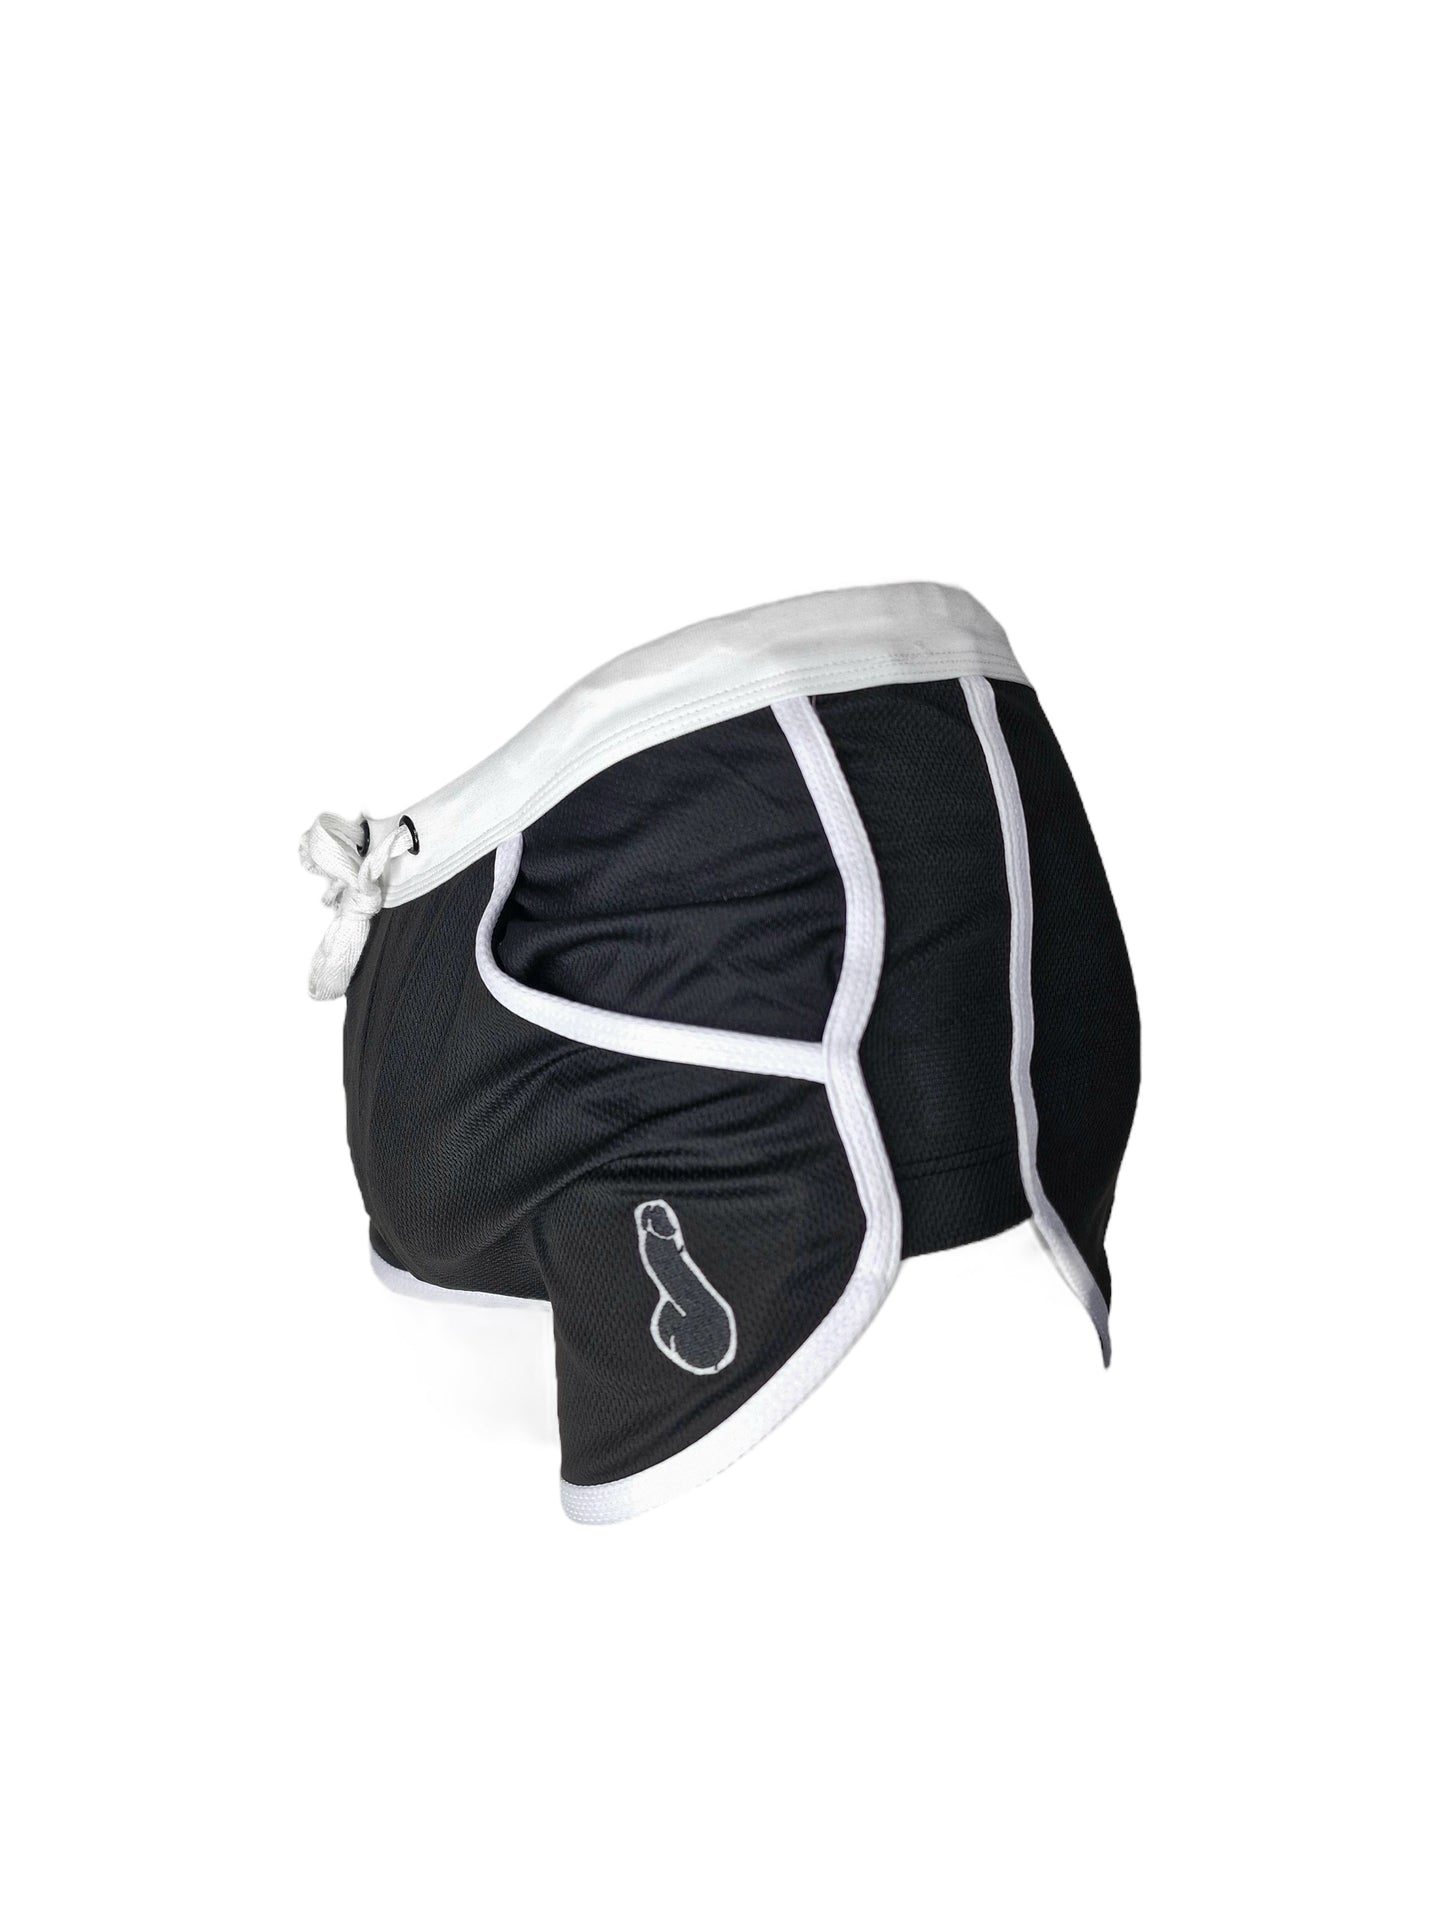 Shorts con suspensorio cosido - Negro